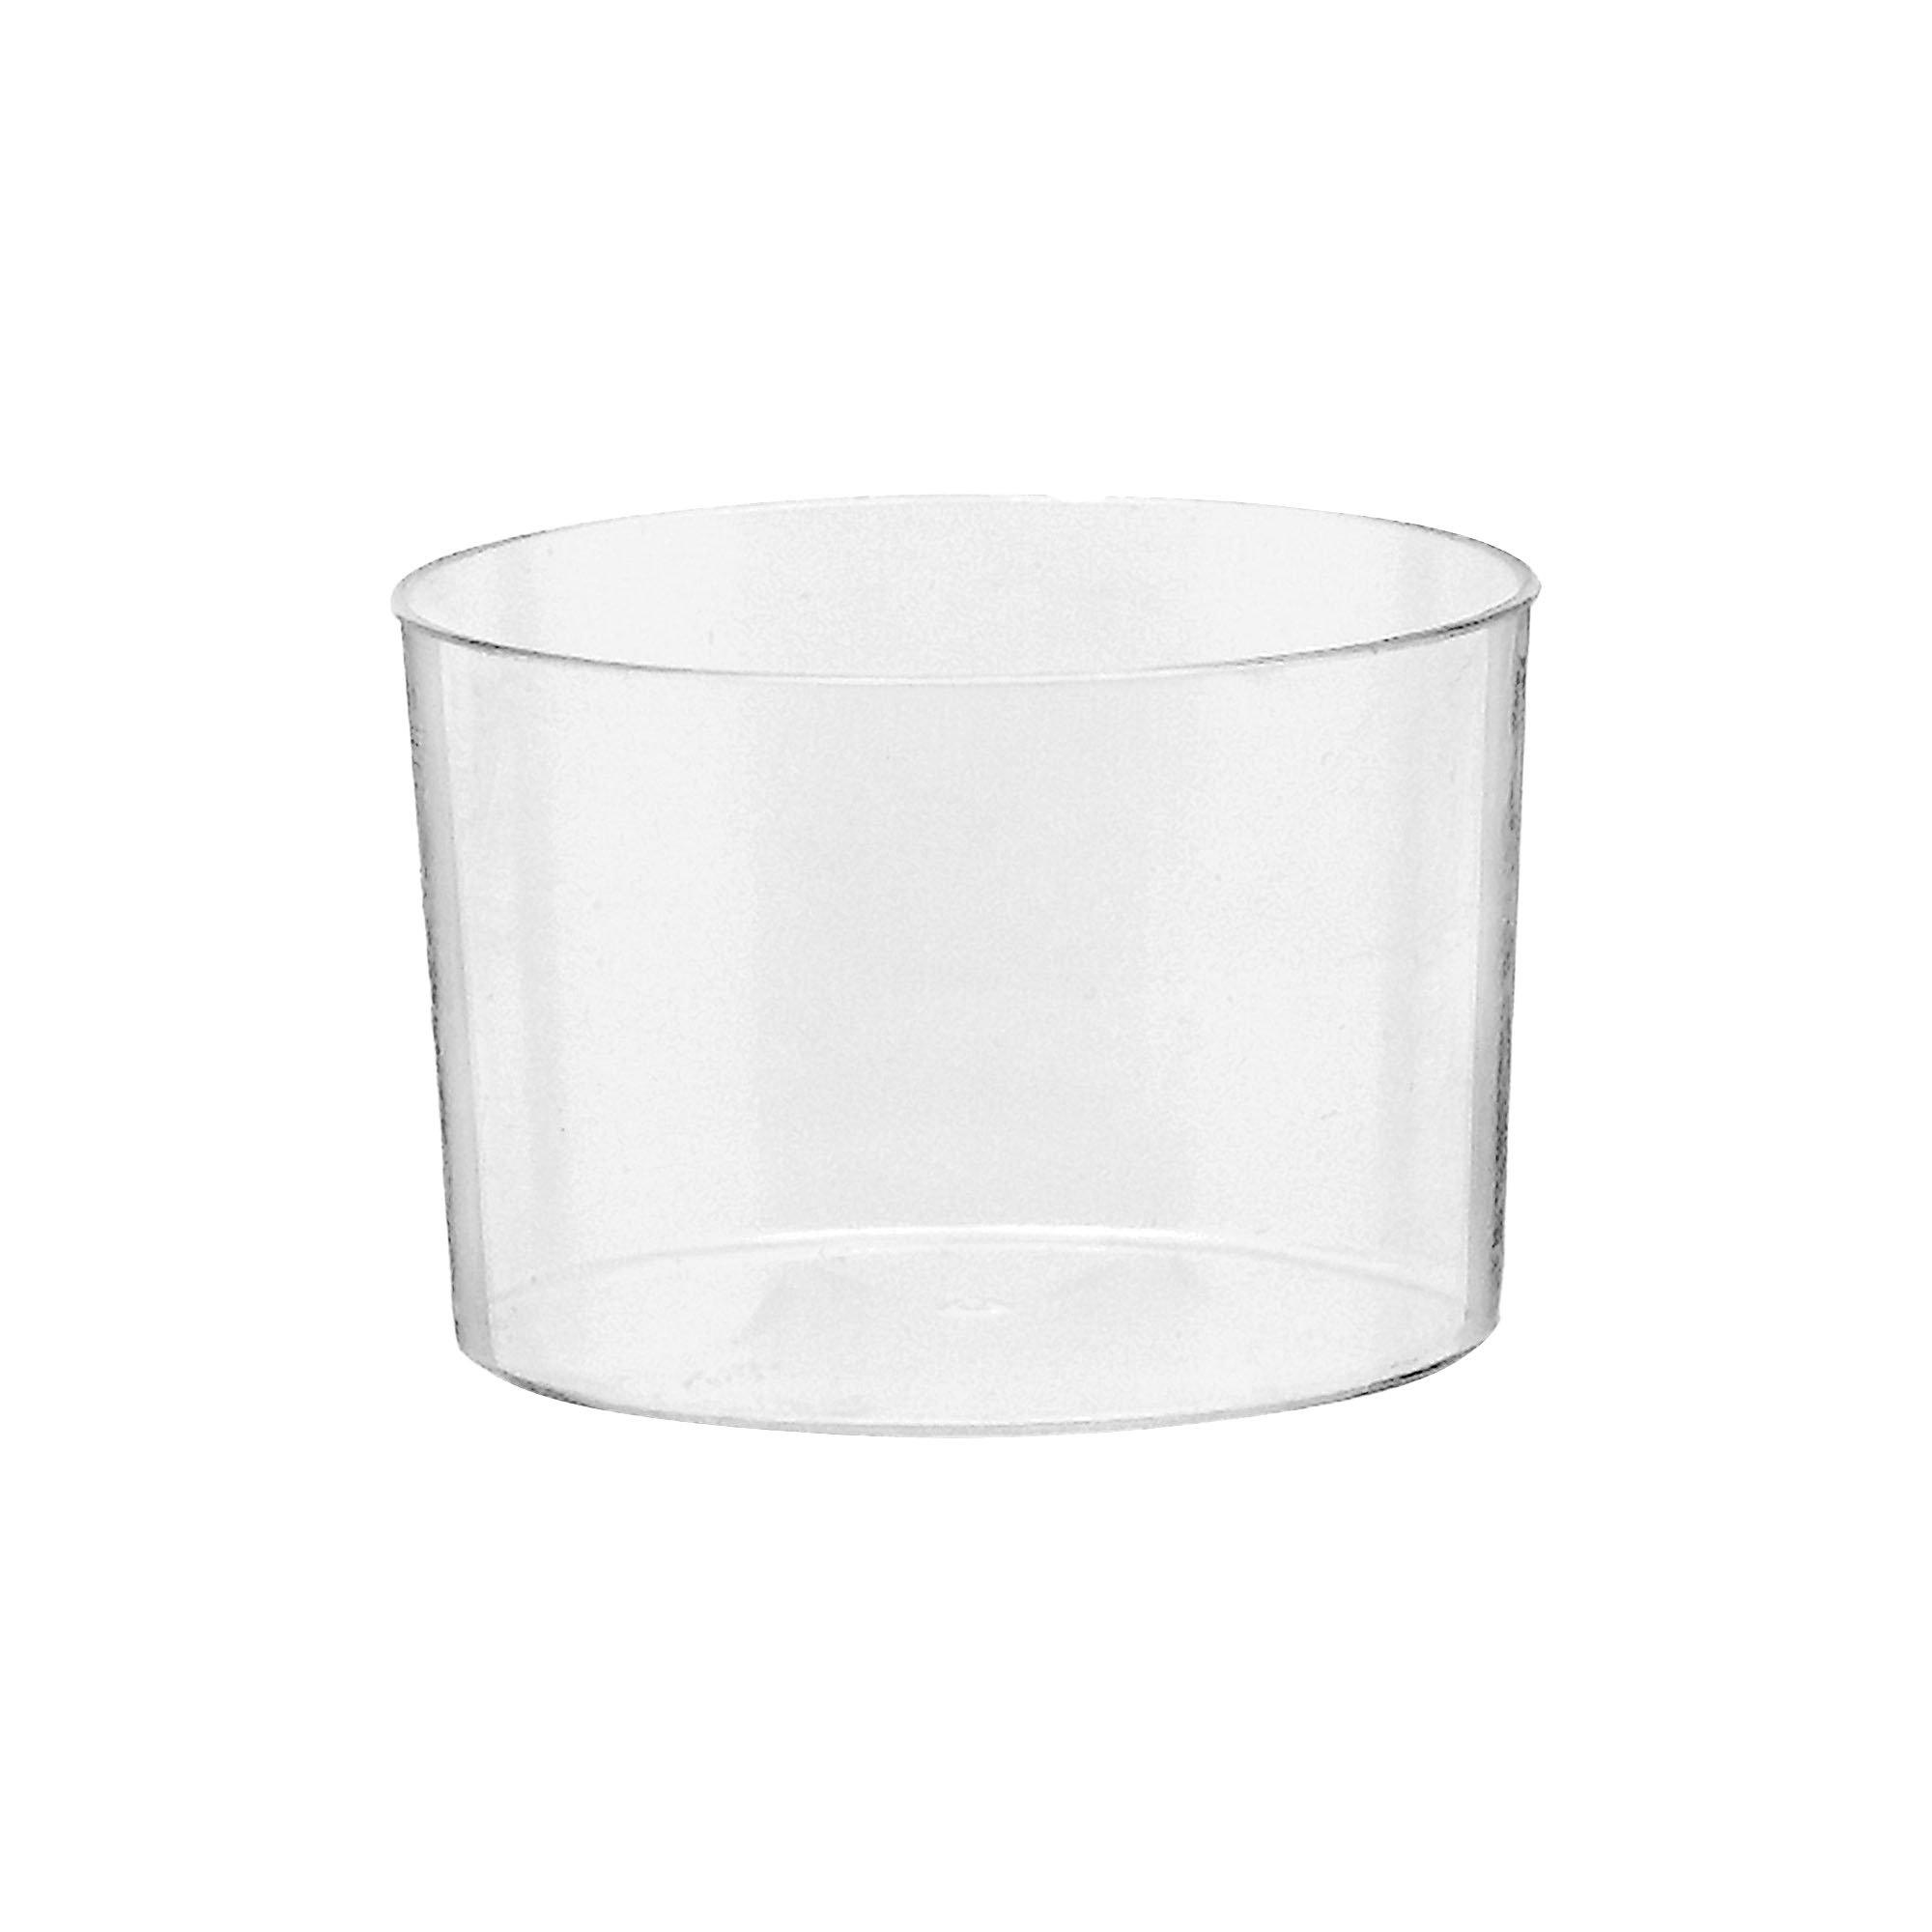 Mini Clear Plastic Bowls 40ct